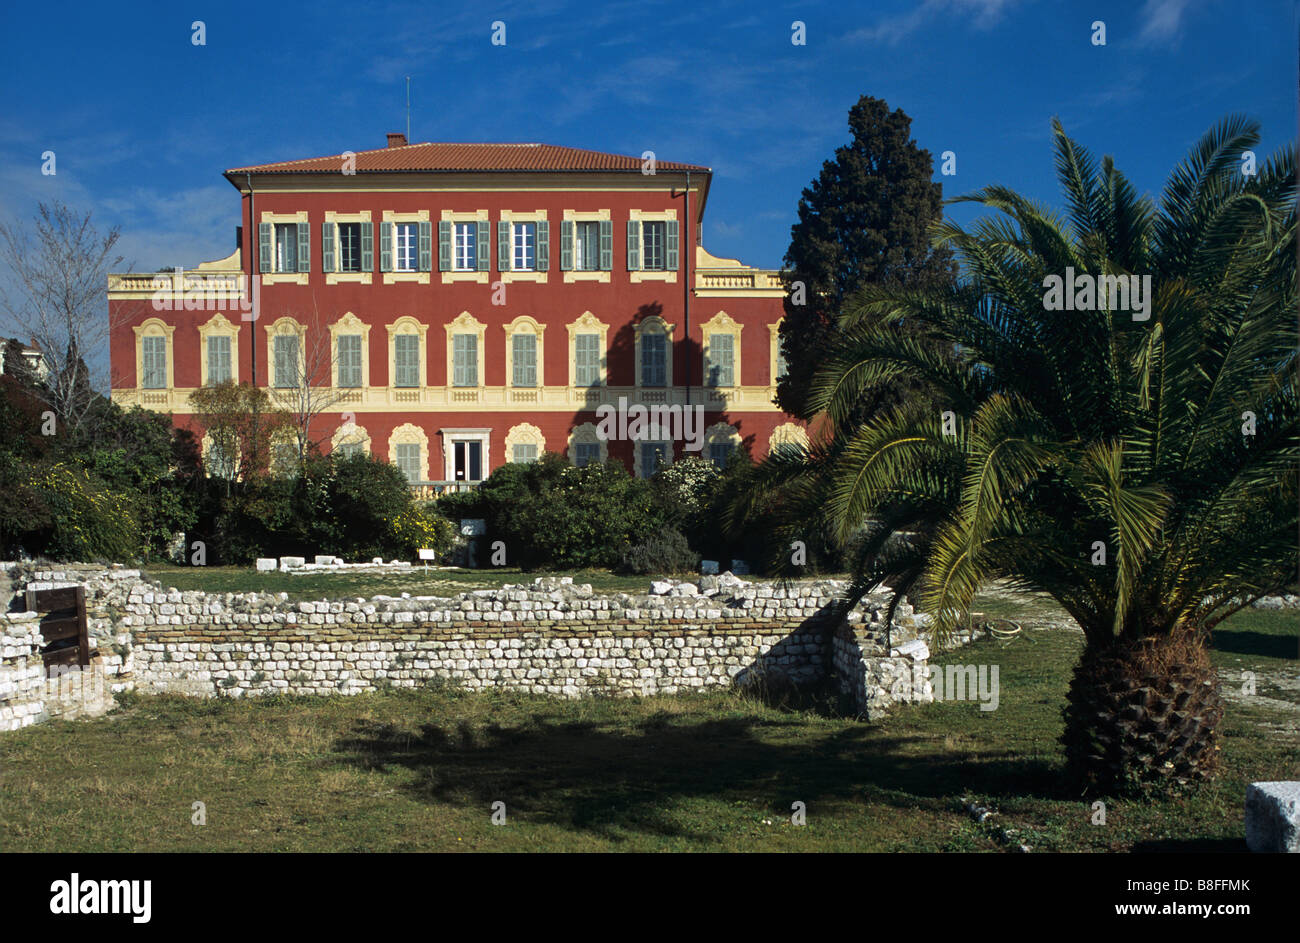 Matisse Museum, Italianate Villa des Arènes (c17th), Cimiez, Nice, Côte d'Azur, France Stock Photo